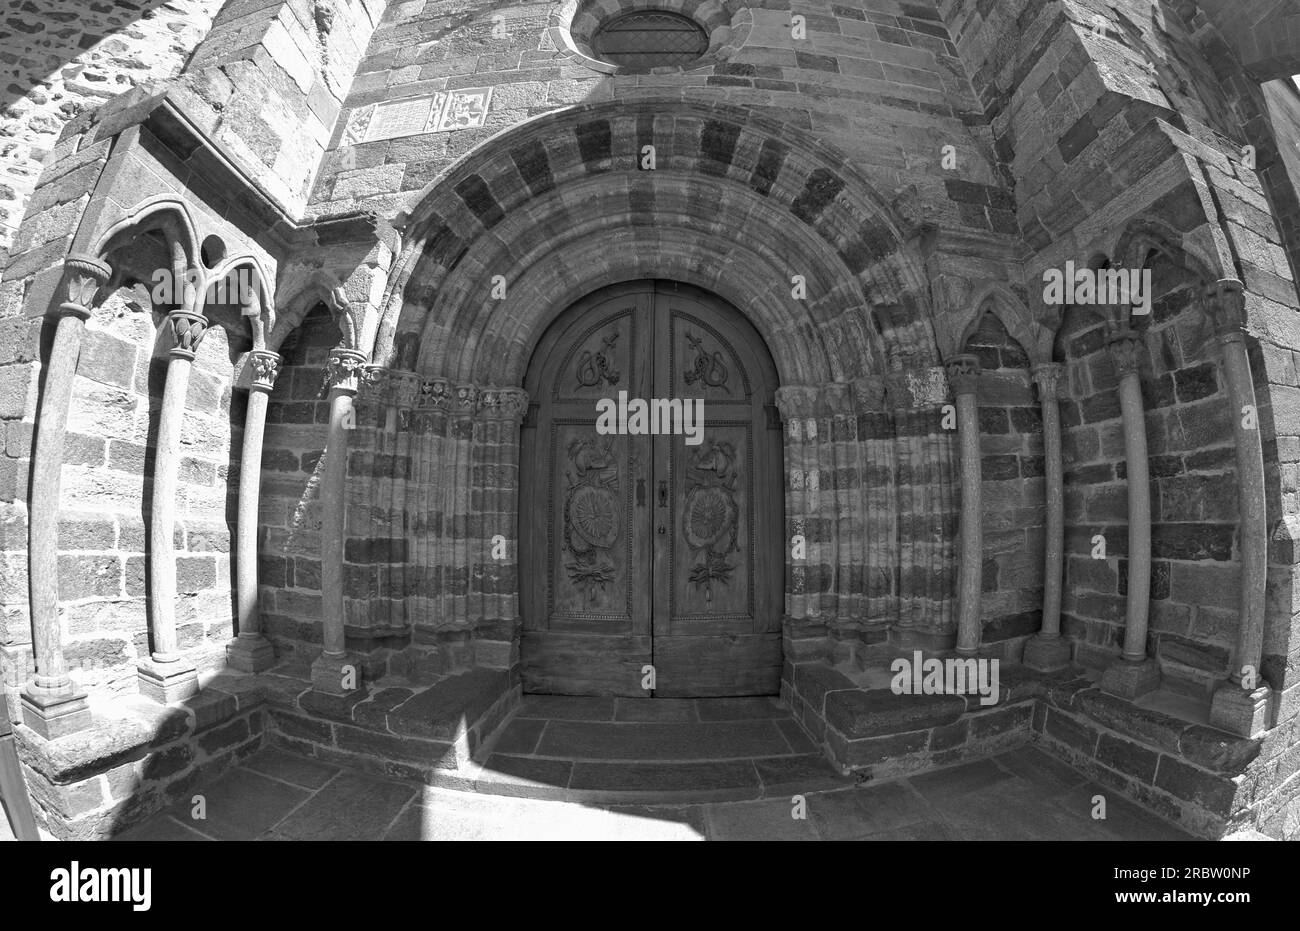 Saint Michael's Abbey exterior, the main entrance, Avigliana, Italy Stock Photo